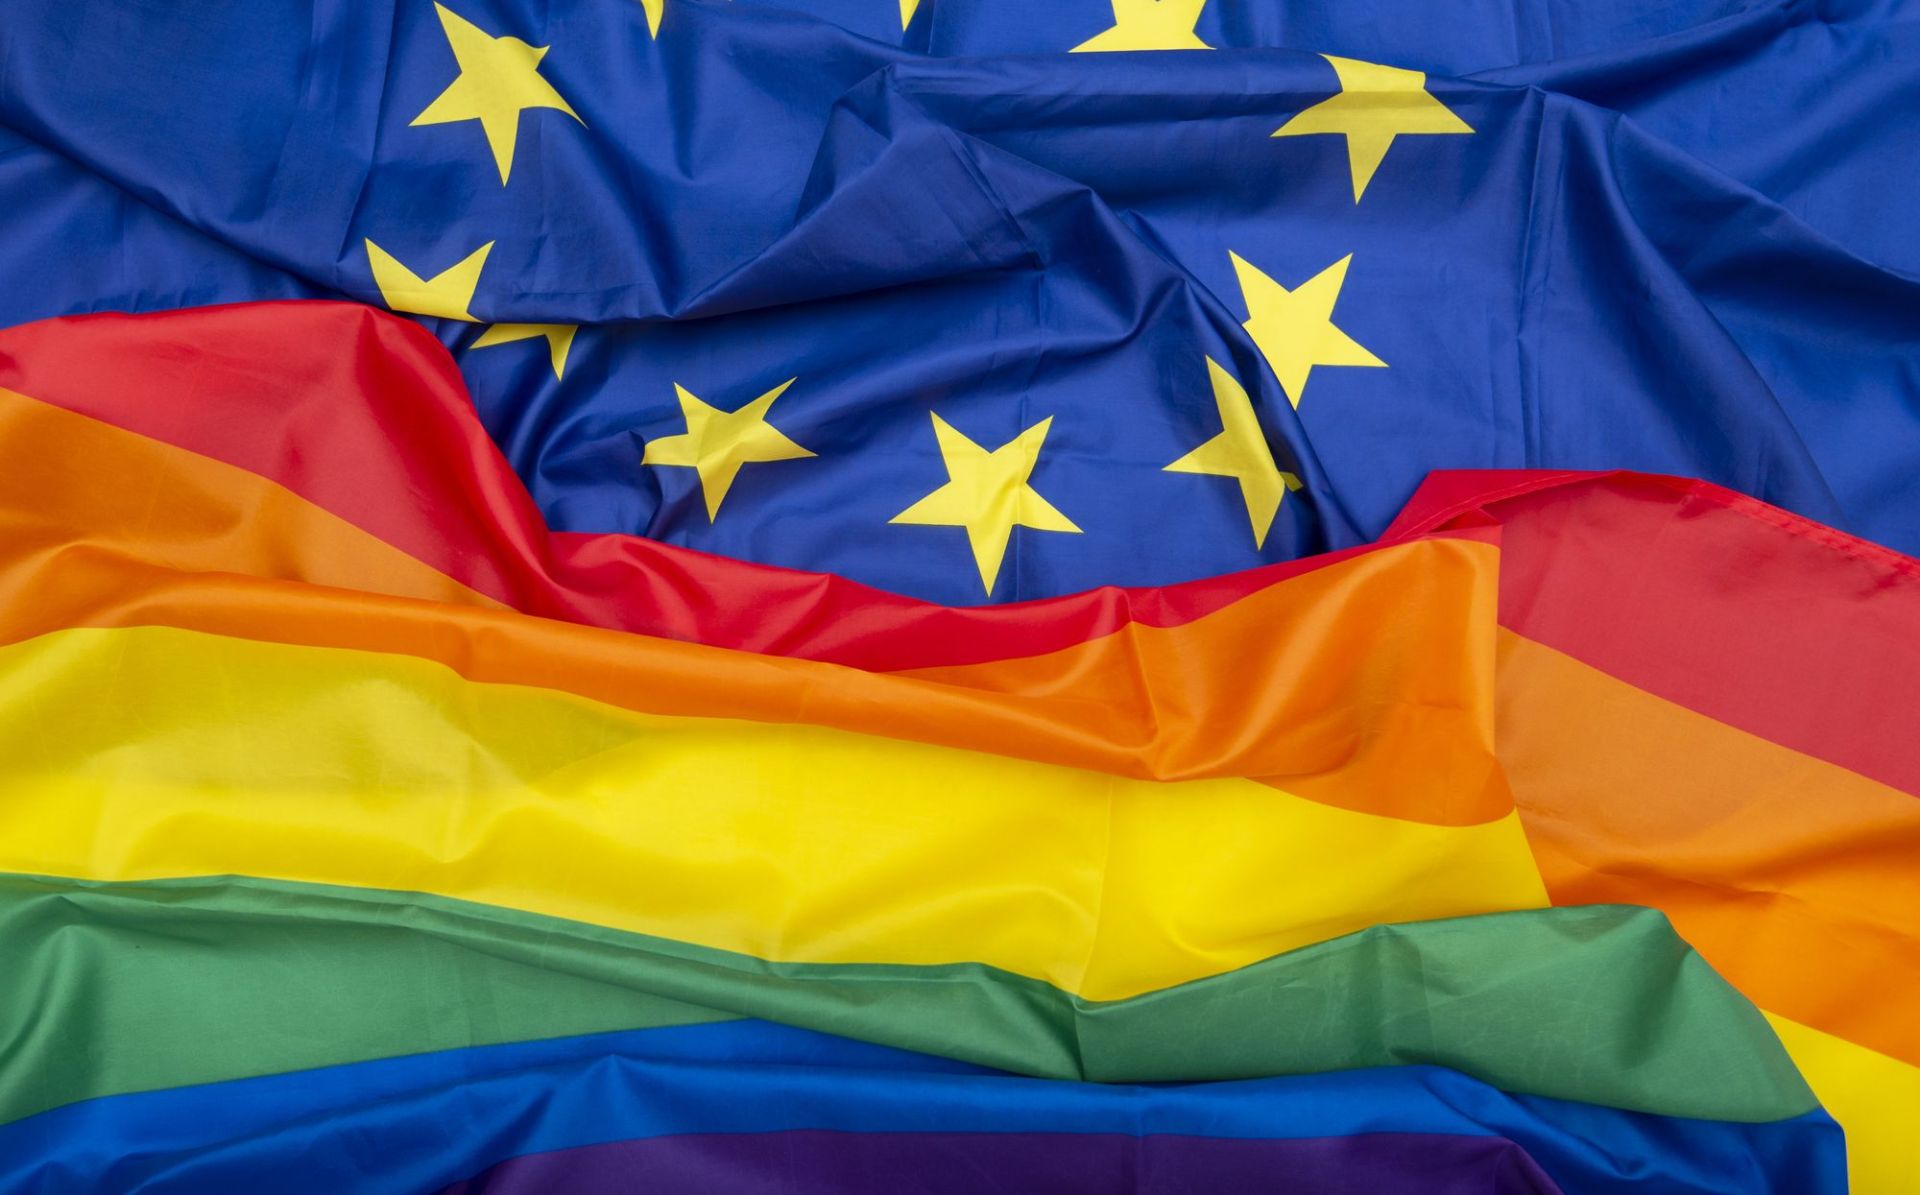 Οι σημαιες της ΕΕ και της ΛΟΑΤΚΙ κοινότητας